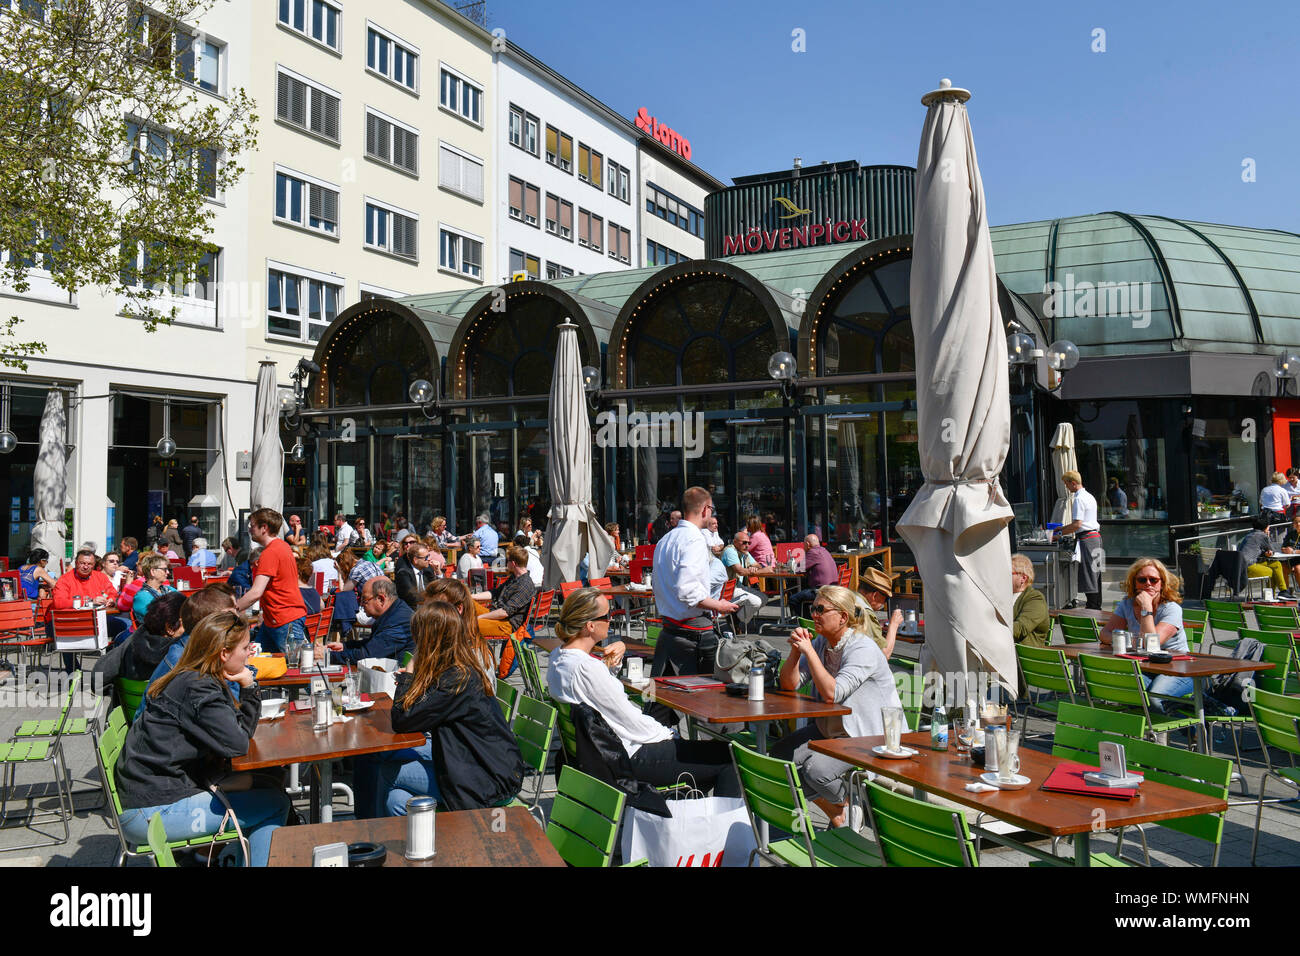 Cafe Kroepcke, Georgstrasse, Hannover, Niedersachsen, Deutschland, Kröpcke Stock Photo